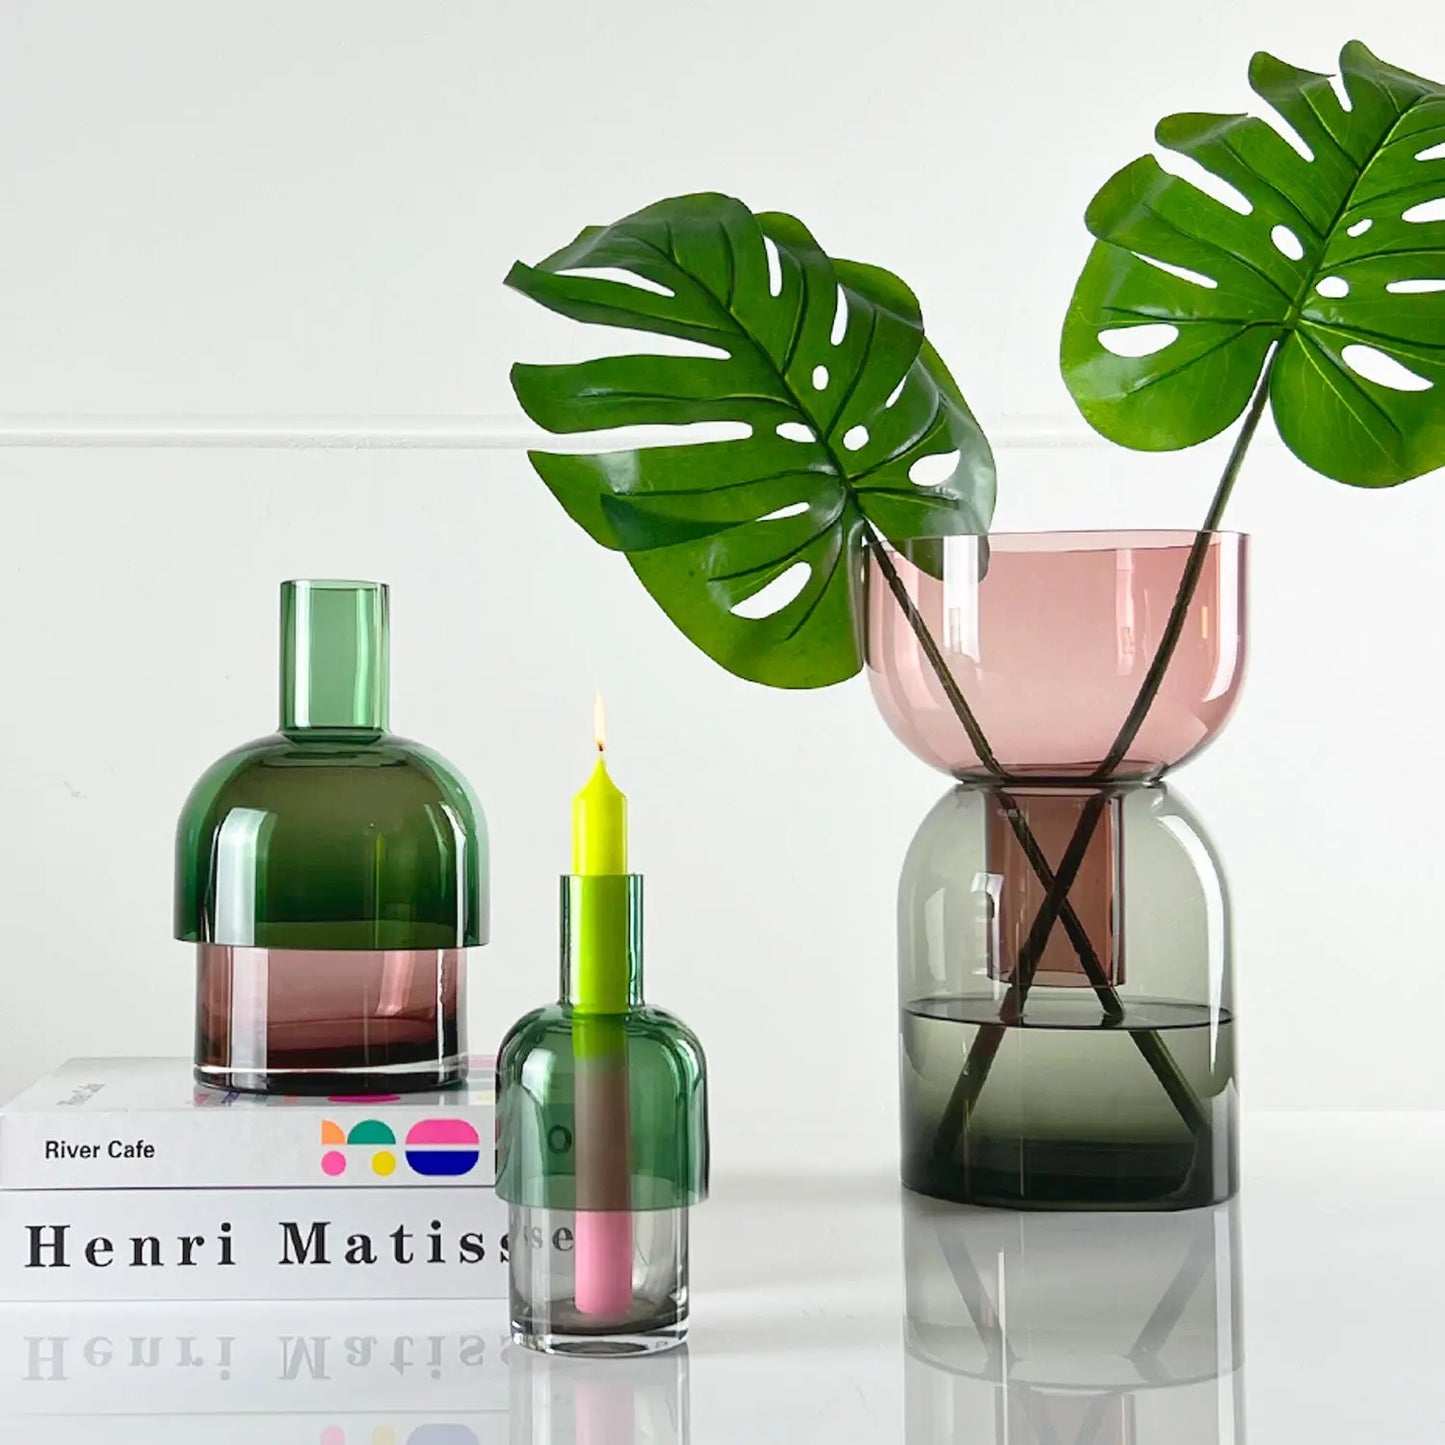 CLOUDNOLA, Flip Vase, Medium Green and Pink Glass CLOUDNOLA